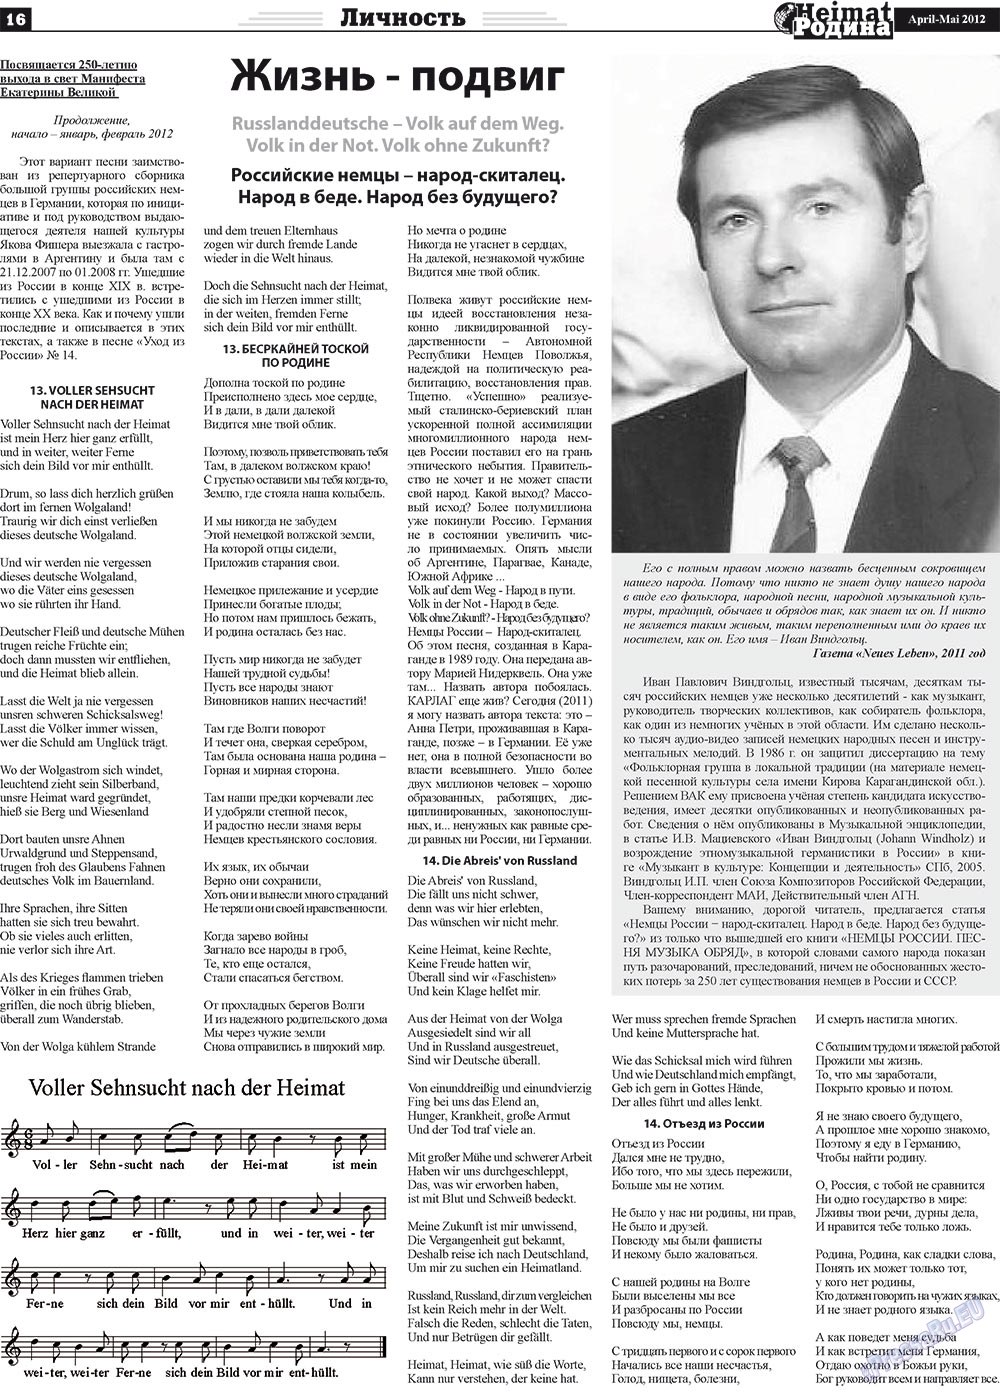 Heimat-Родина (газета). 2012 год, номер 4, стр. 16